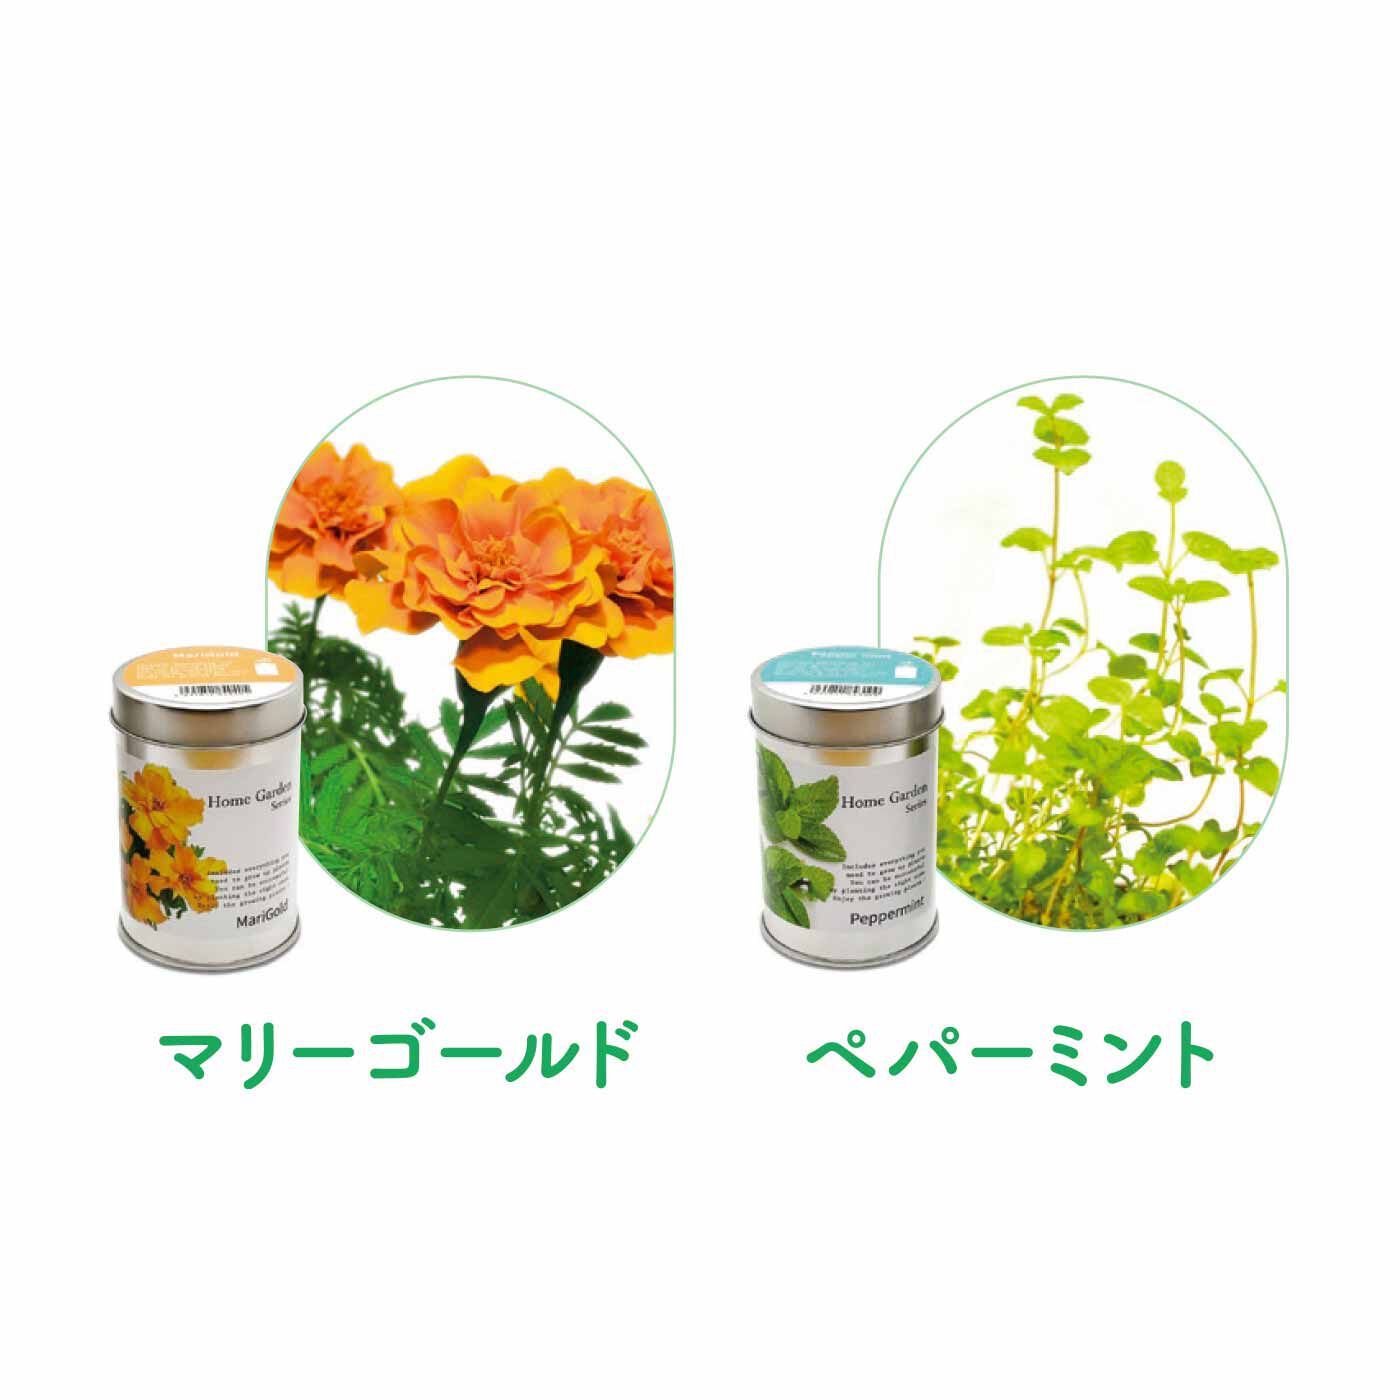 FELISSIMO PARTNERS|缶のままカンタン栽培 ホームガーデンの会（6回予約）|鮮やかなオレンジや黄色の花を咲かせるマリーゴールド。ペパーミントはお料理やデザートに添えるほか、ハーブティーや入浴剤としても活用できます。